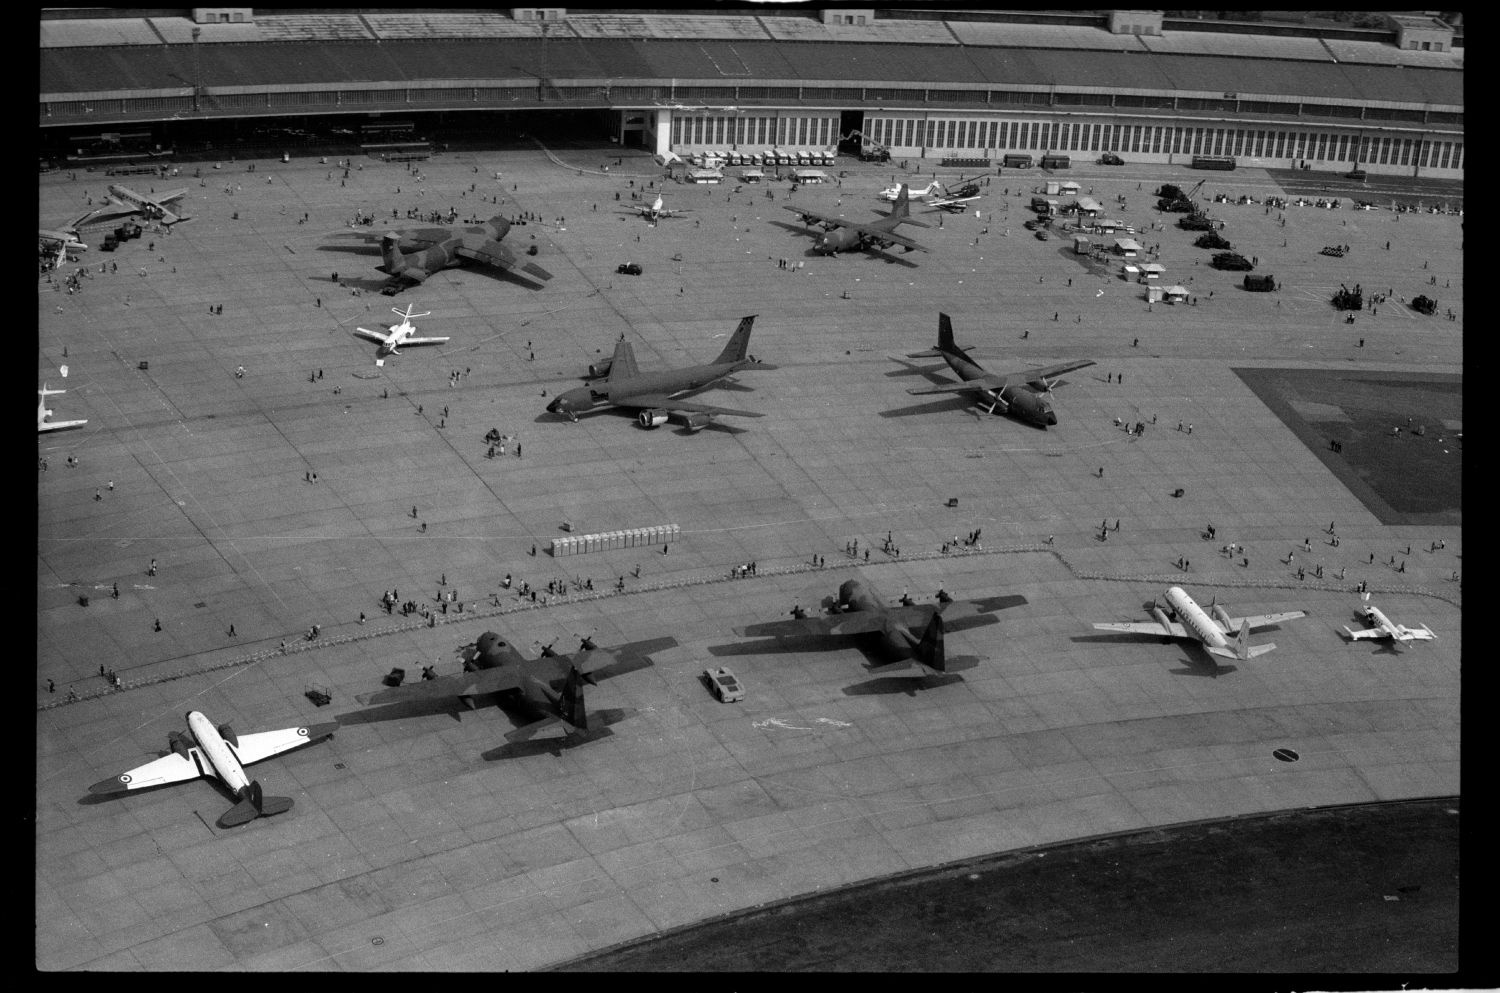 s/w-Fotografie: Tag der offenen Tür auf der Tempelhof Air Base in Berlin-Tempelhof (AlliiertenMuseum/U.S. Army Photograph Public Domain Mark)